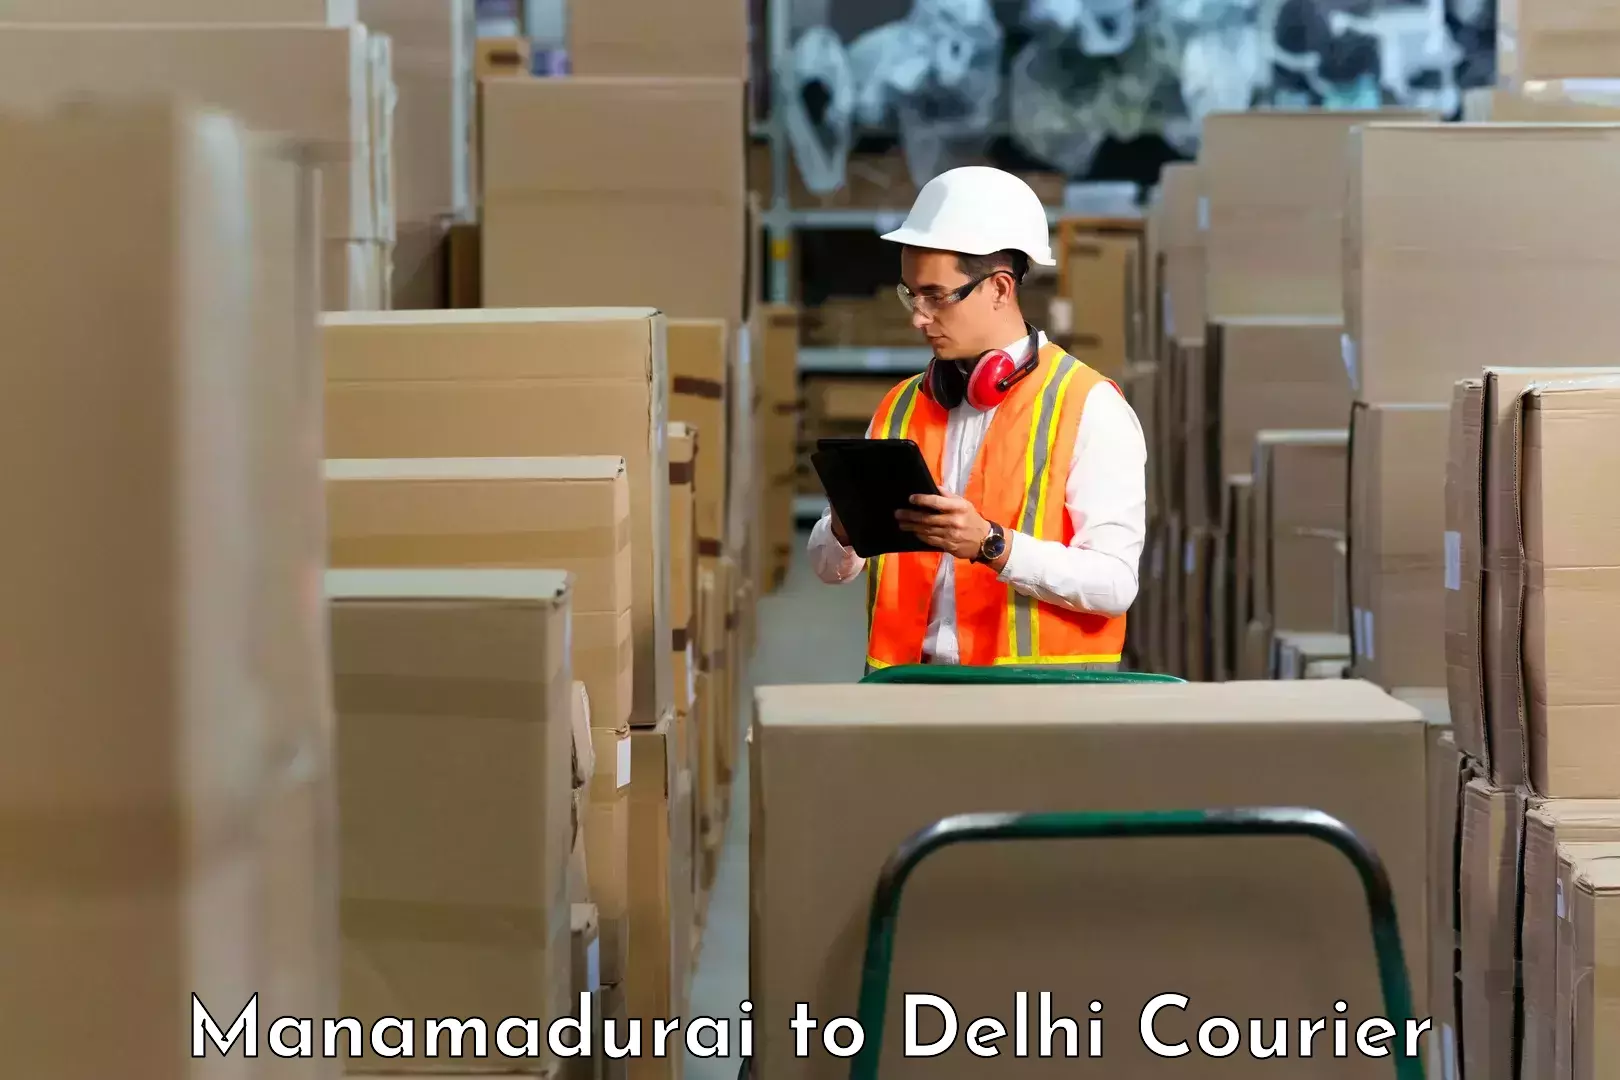 Customer-focused courier Manamadurai to University of Delhi